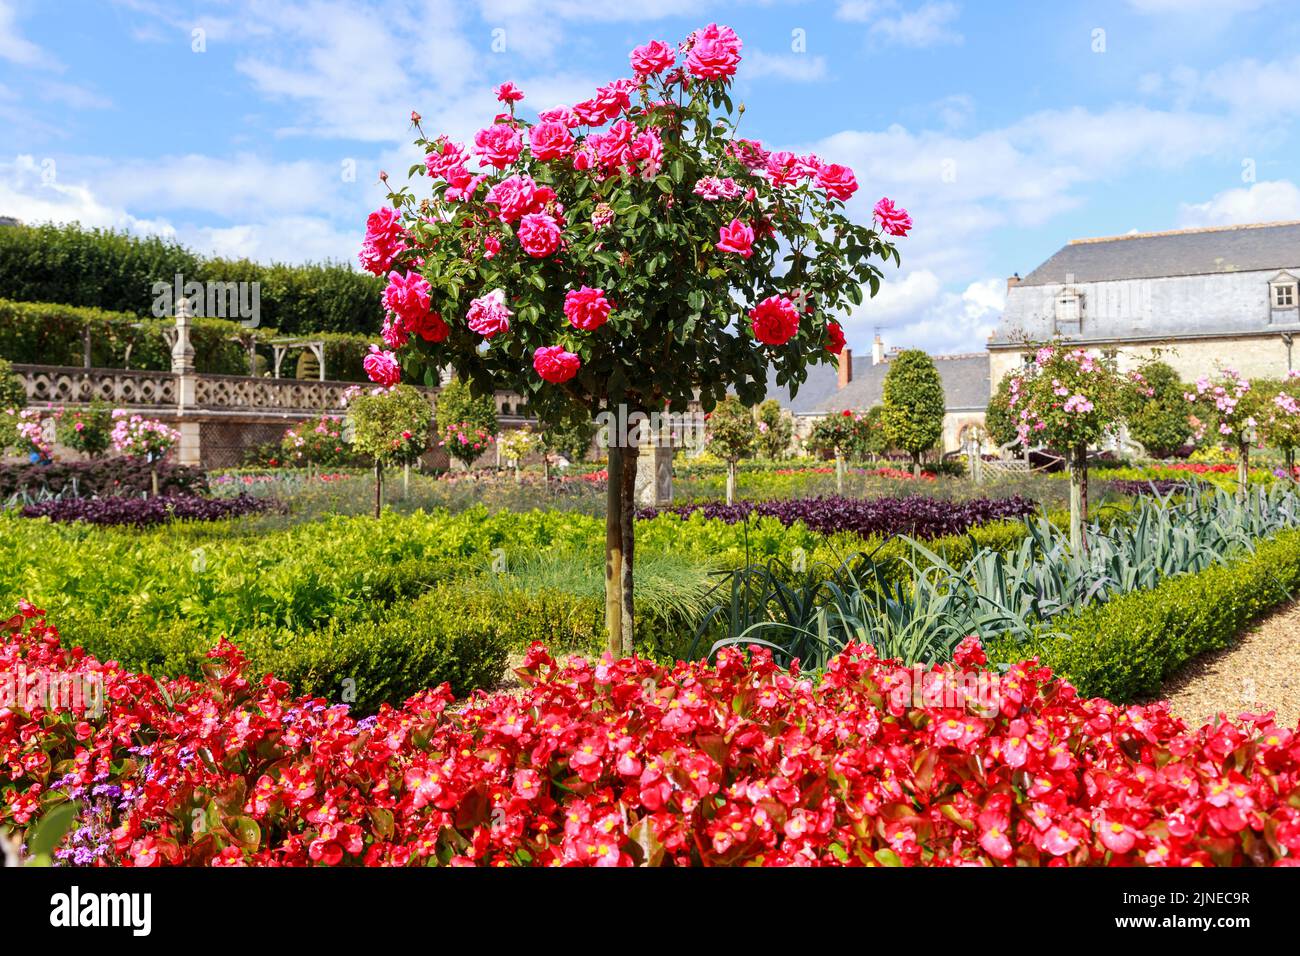 VILLANDRY, FRANKREICH - 7. SEPTEMBER 2019: Dies ist eines der dekorativ gewachsenen, baumförmigen Rosensträucher, die die berühmten Gärten des Schlosses von VI schmücken Stockfoto